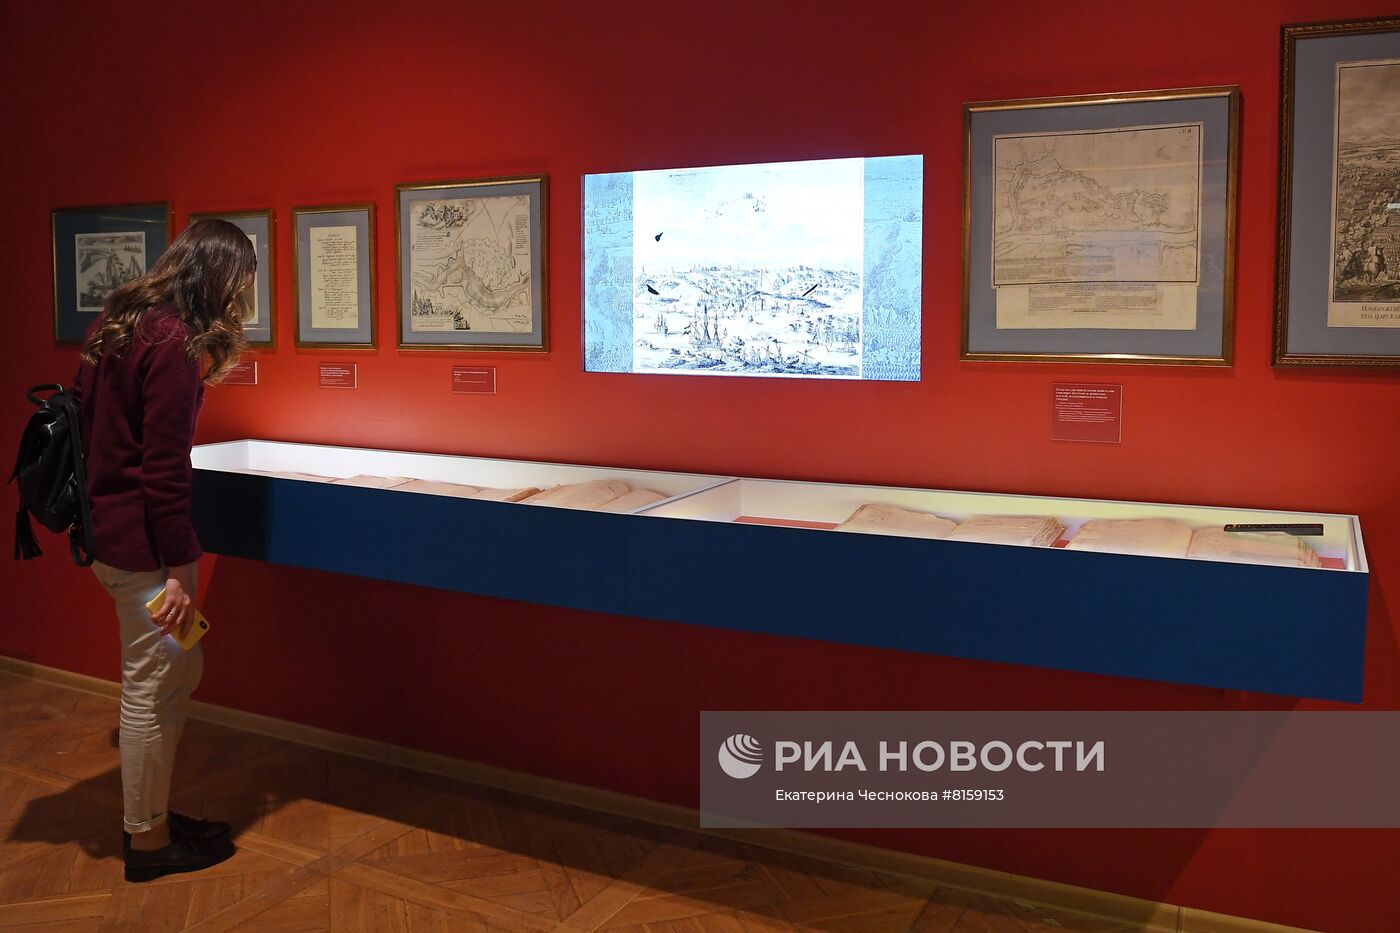 Историко-документальная выставка "Пётр I и его эпоха"